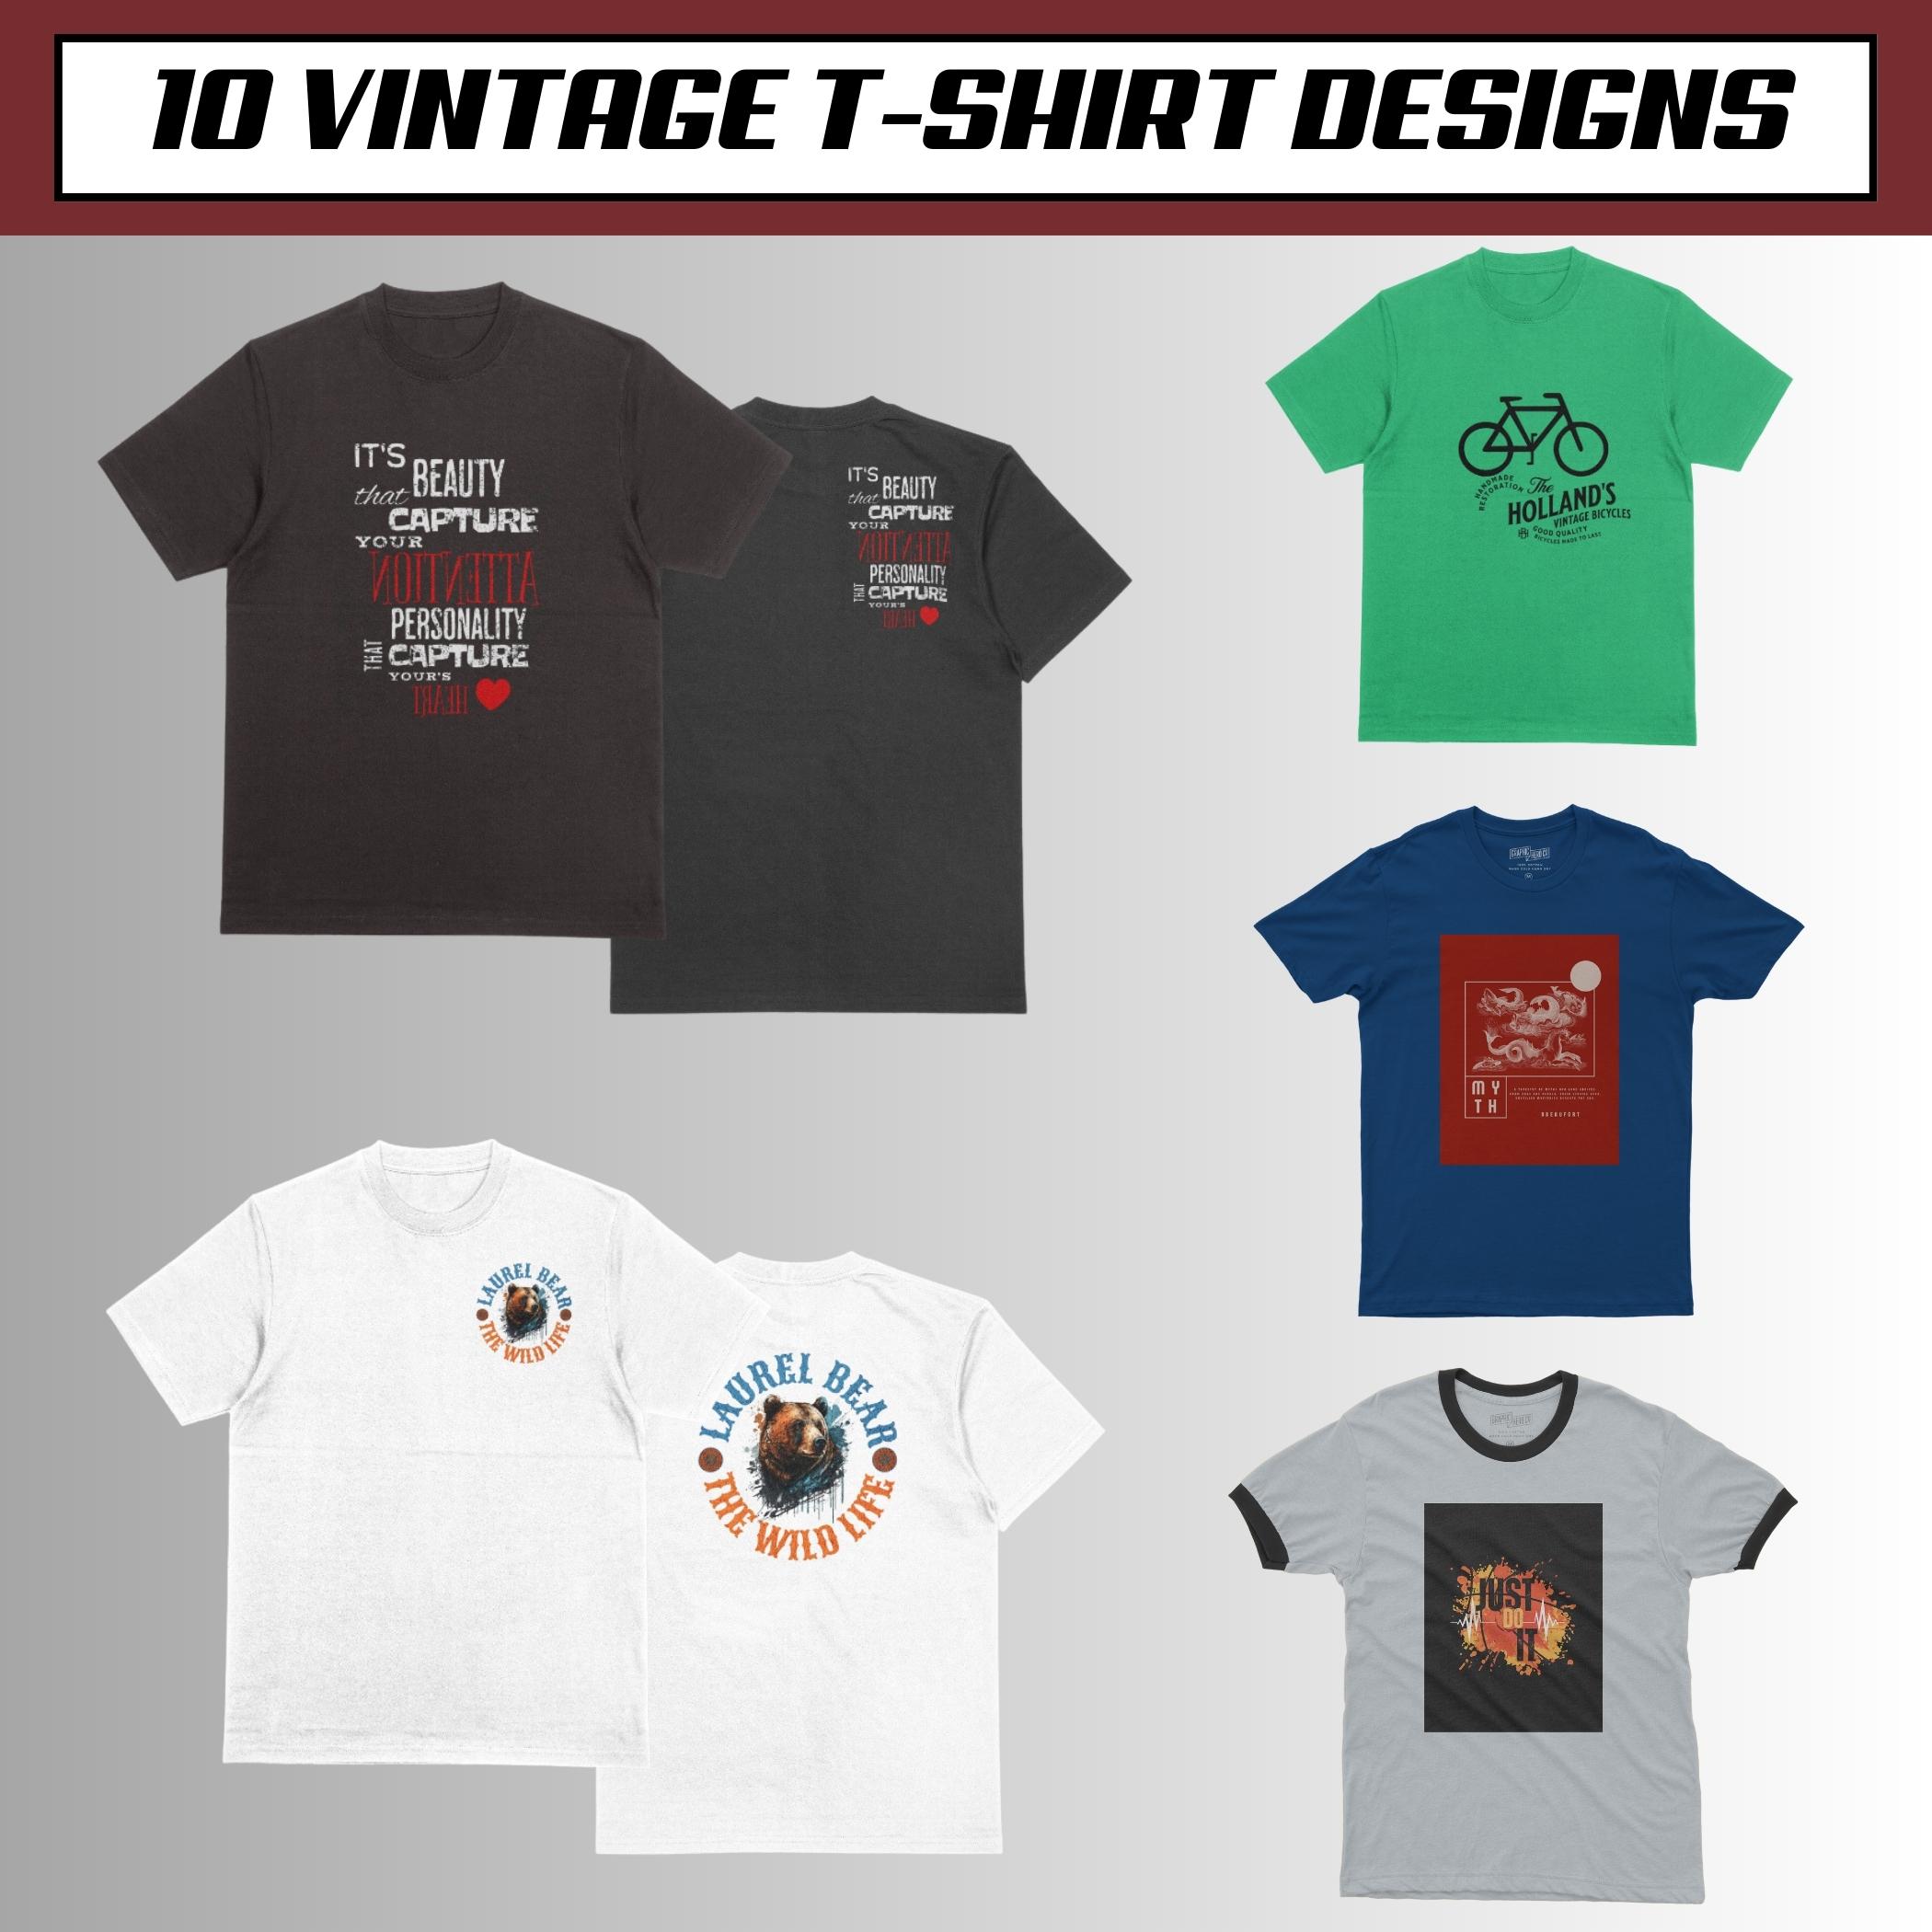 Retro Vintage T-Shirt Design Bundle Graphic by T-Shirt Design